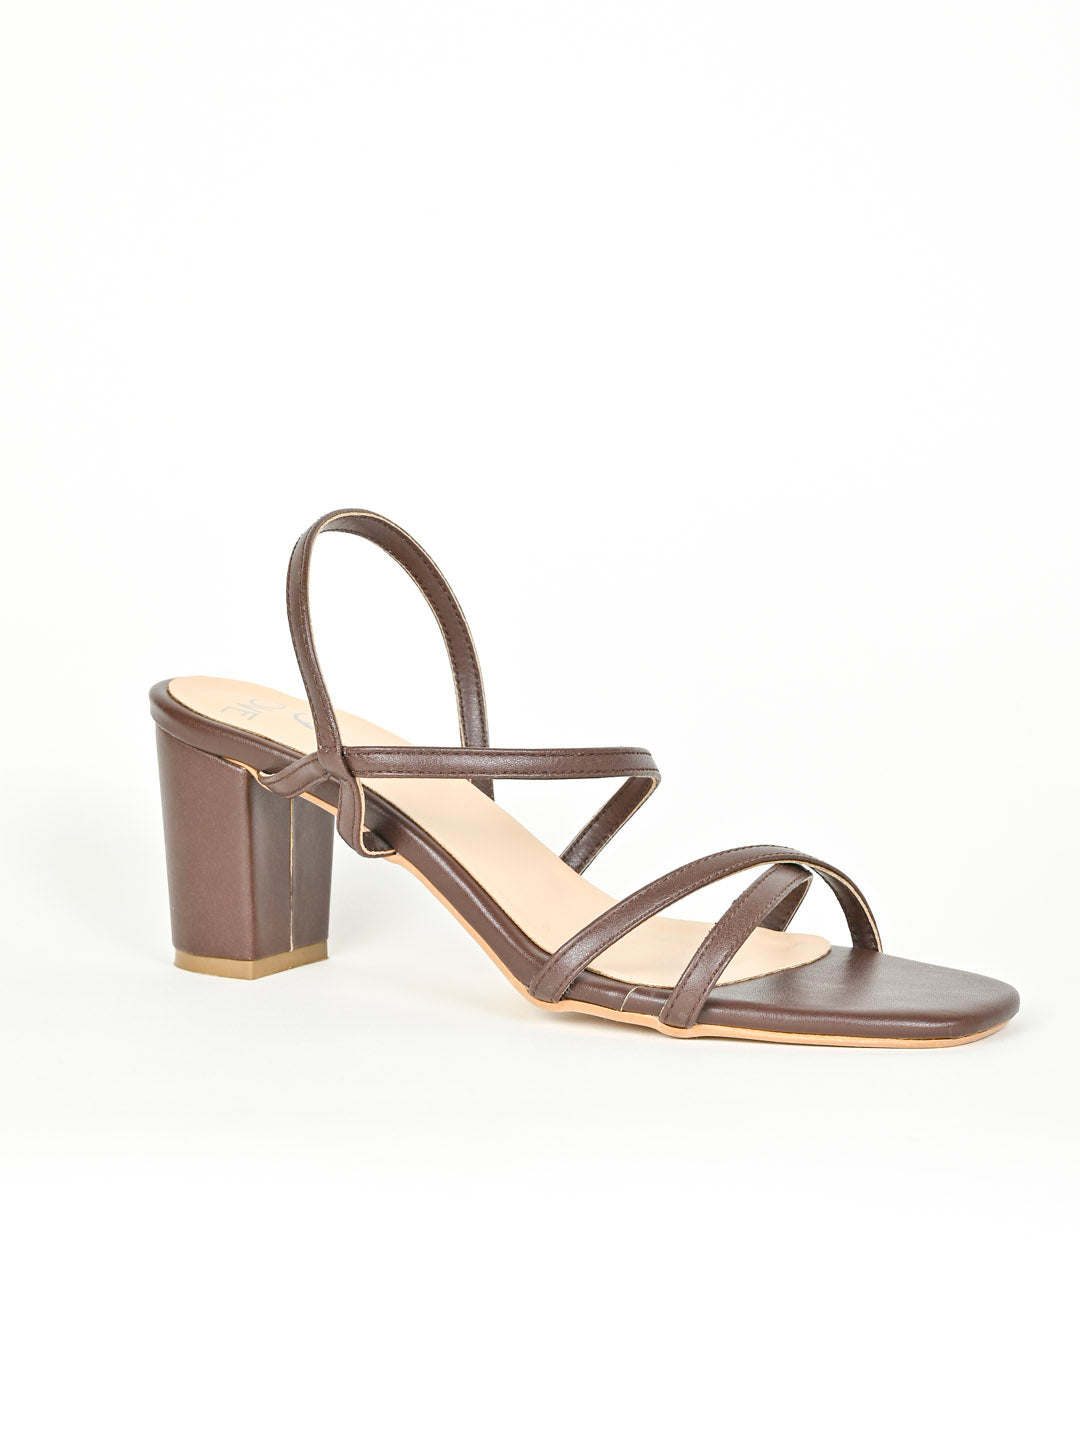 Brown Heels | Buy Women's Tan Heels Online Australia- THE ICONIC